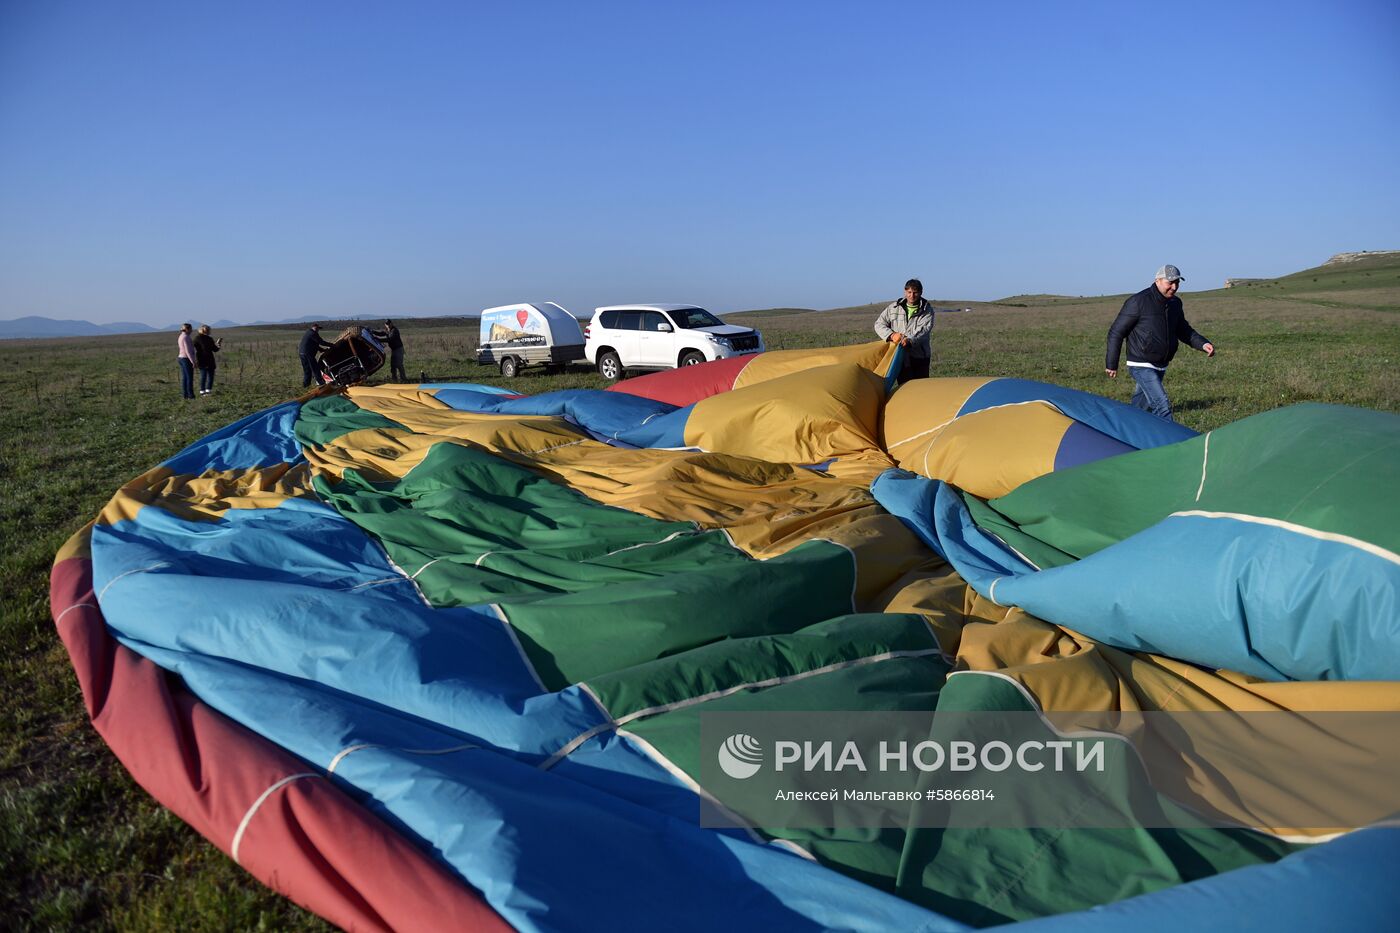 Фестиваль воздушных шаров «Крымская весна»